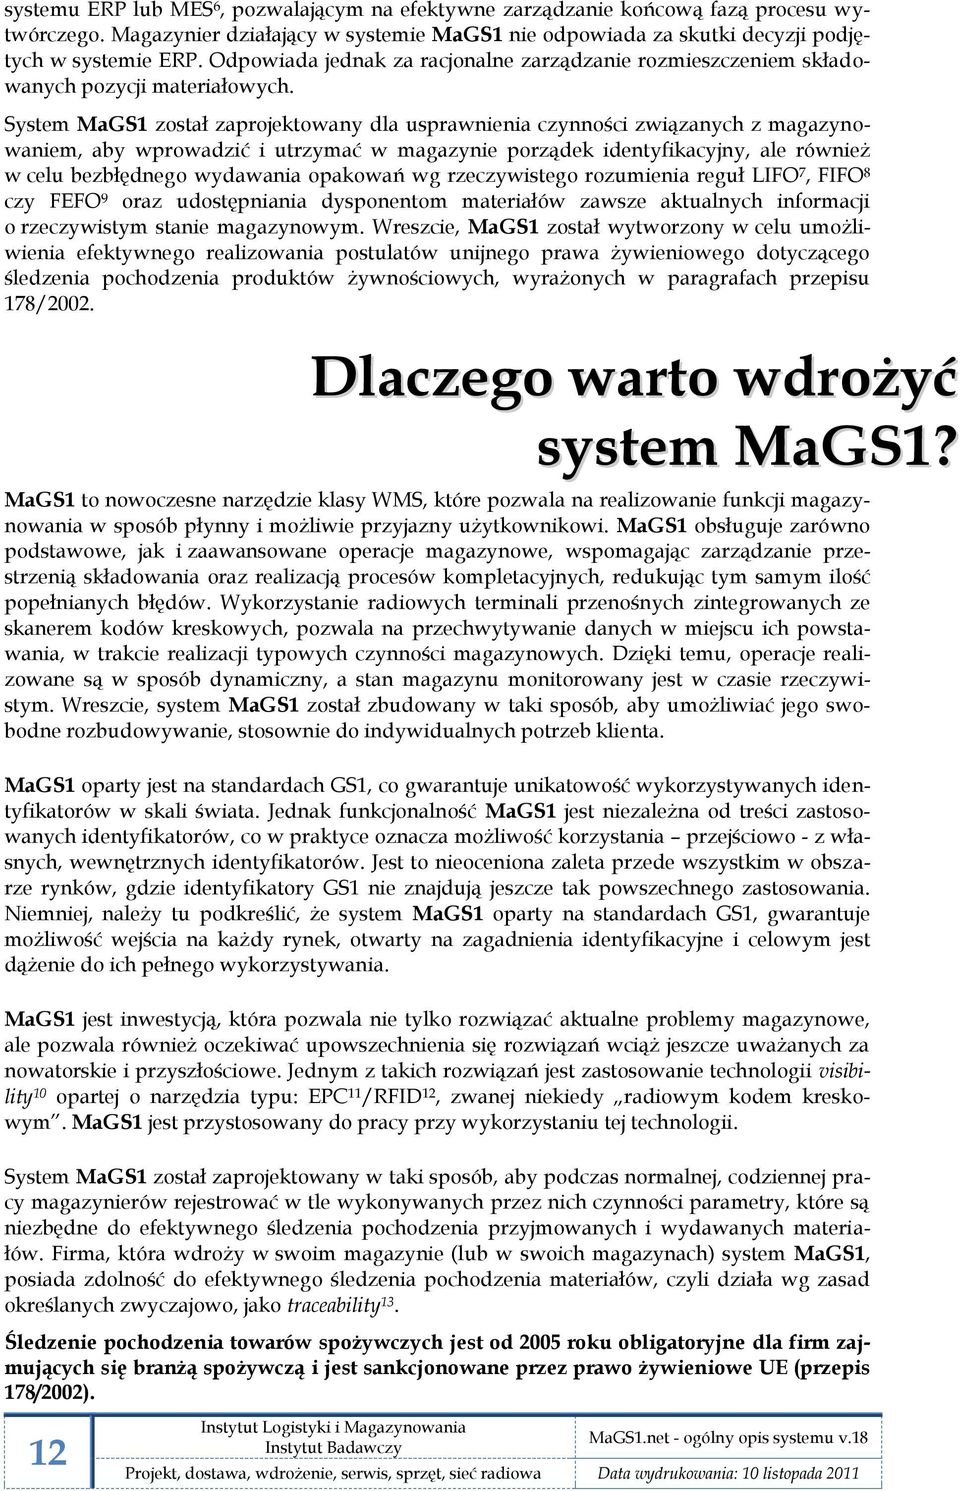 System MaGS1 został zaprojektowany dla usprawnienia czynności związanych z magazynowaniem, aby wprowadzić i utrzymać w magazynie porządek identyfikacyjny, ale również w celu bezbłędnego wydawania